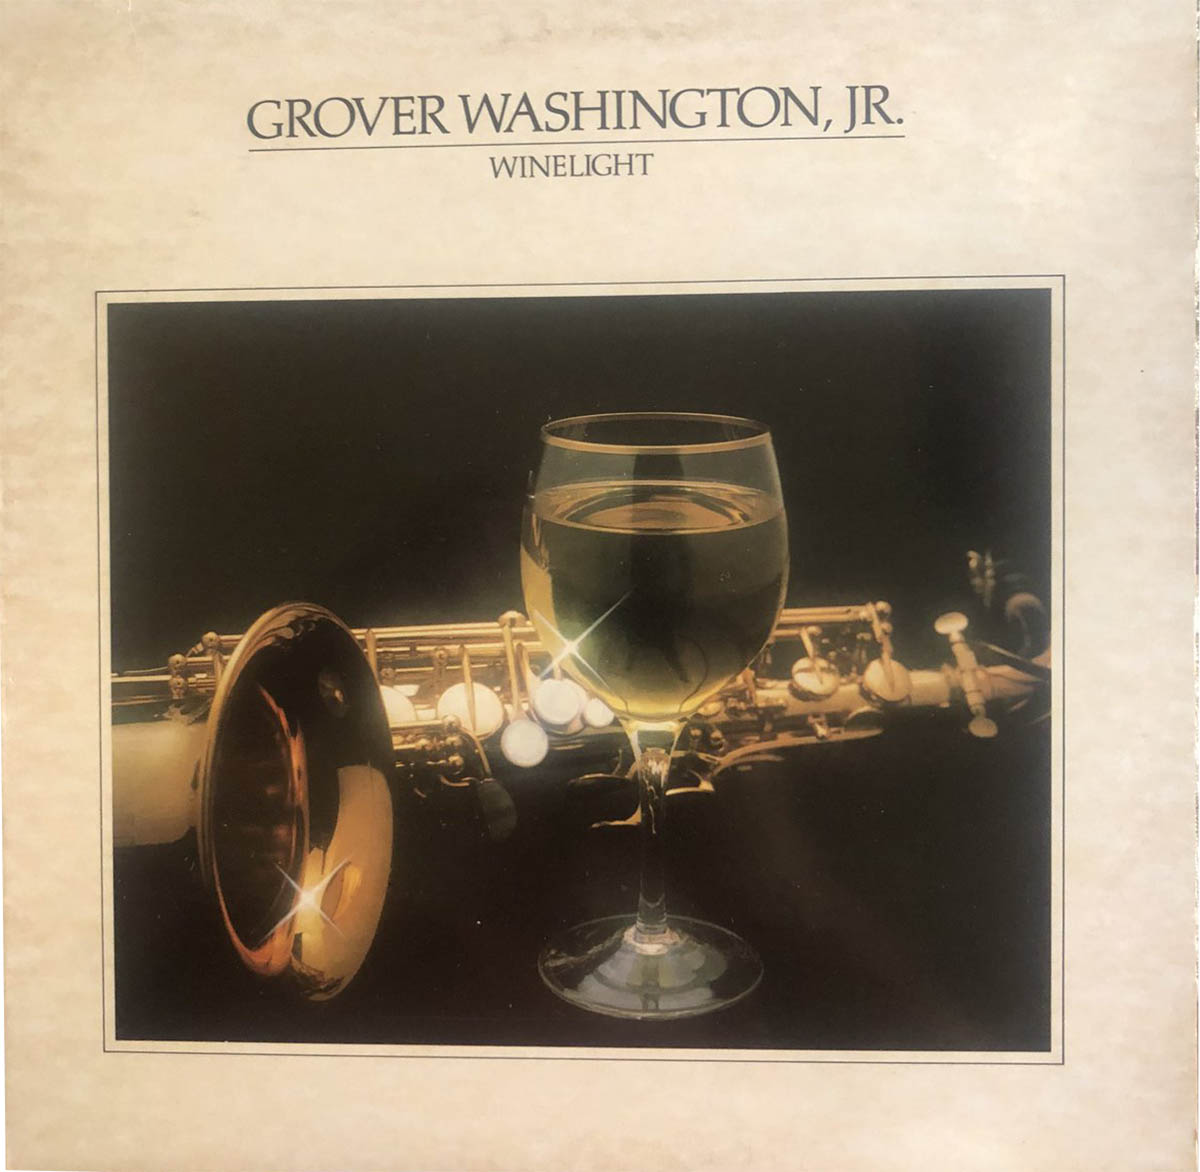 Couverture de l'album "Winelight" de Grover Washington Jr (1980)